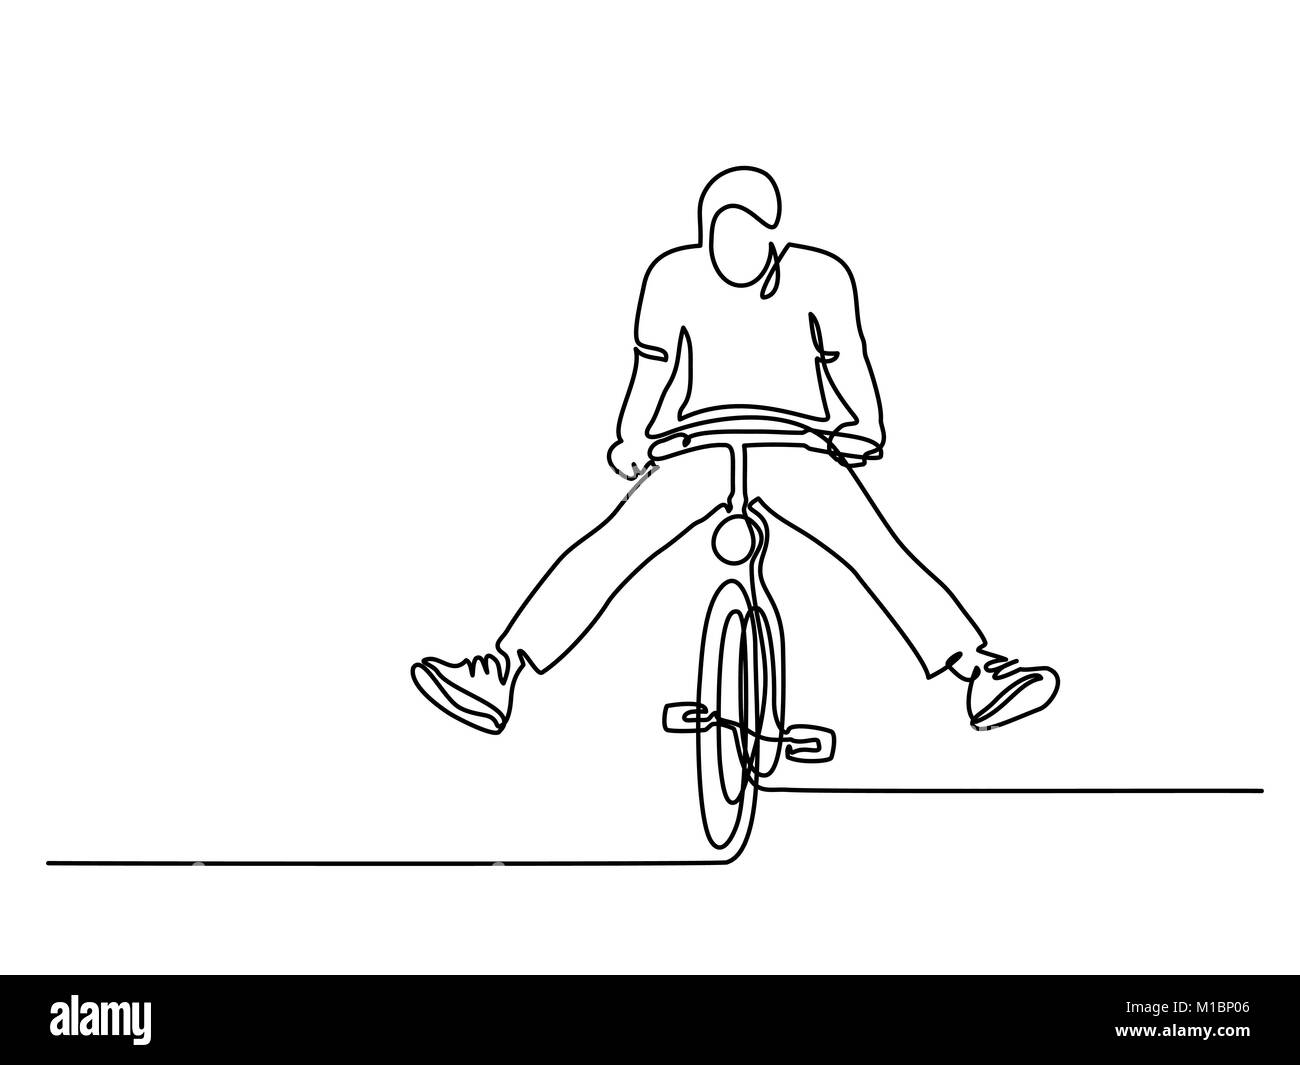 Mann auf einem Fahrrad haben Spaß Stock Vektor